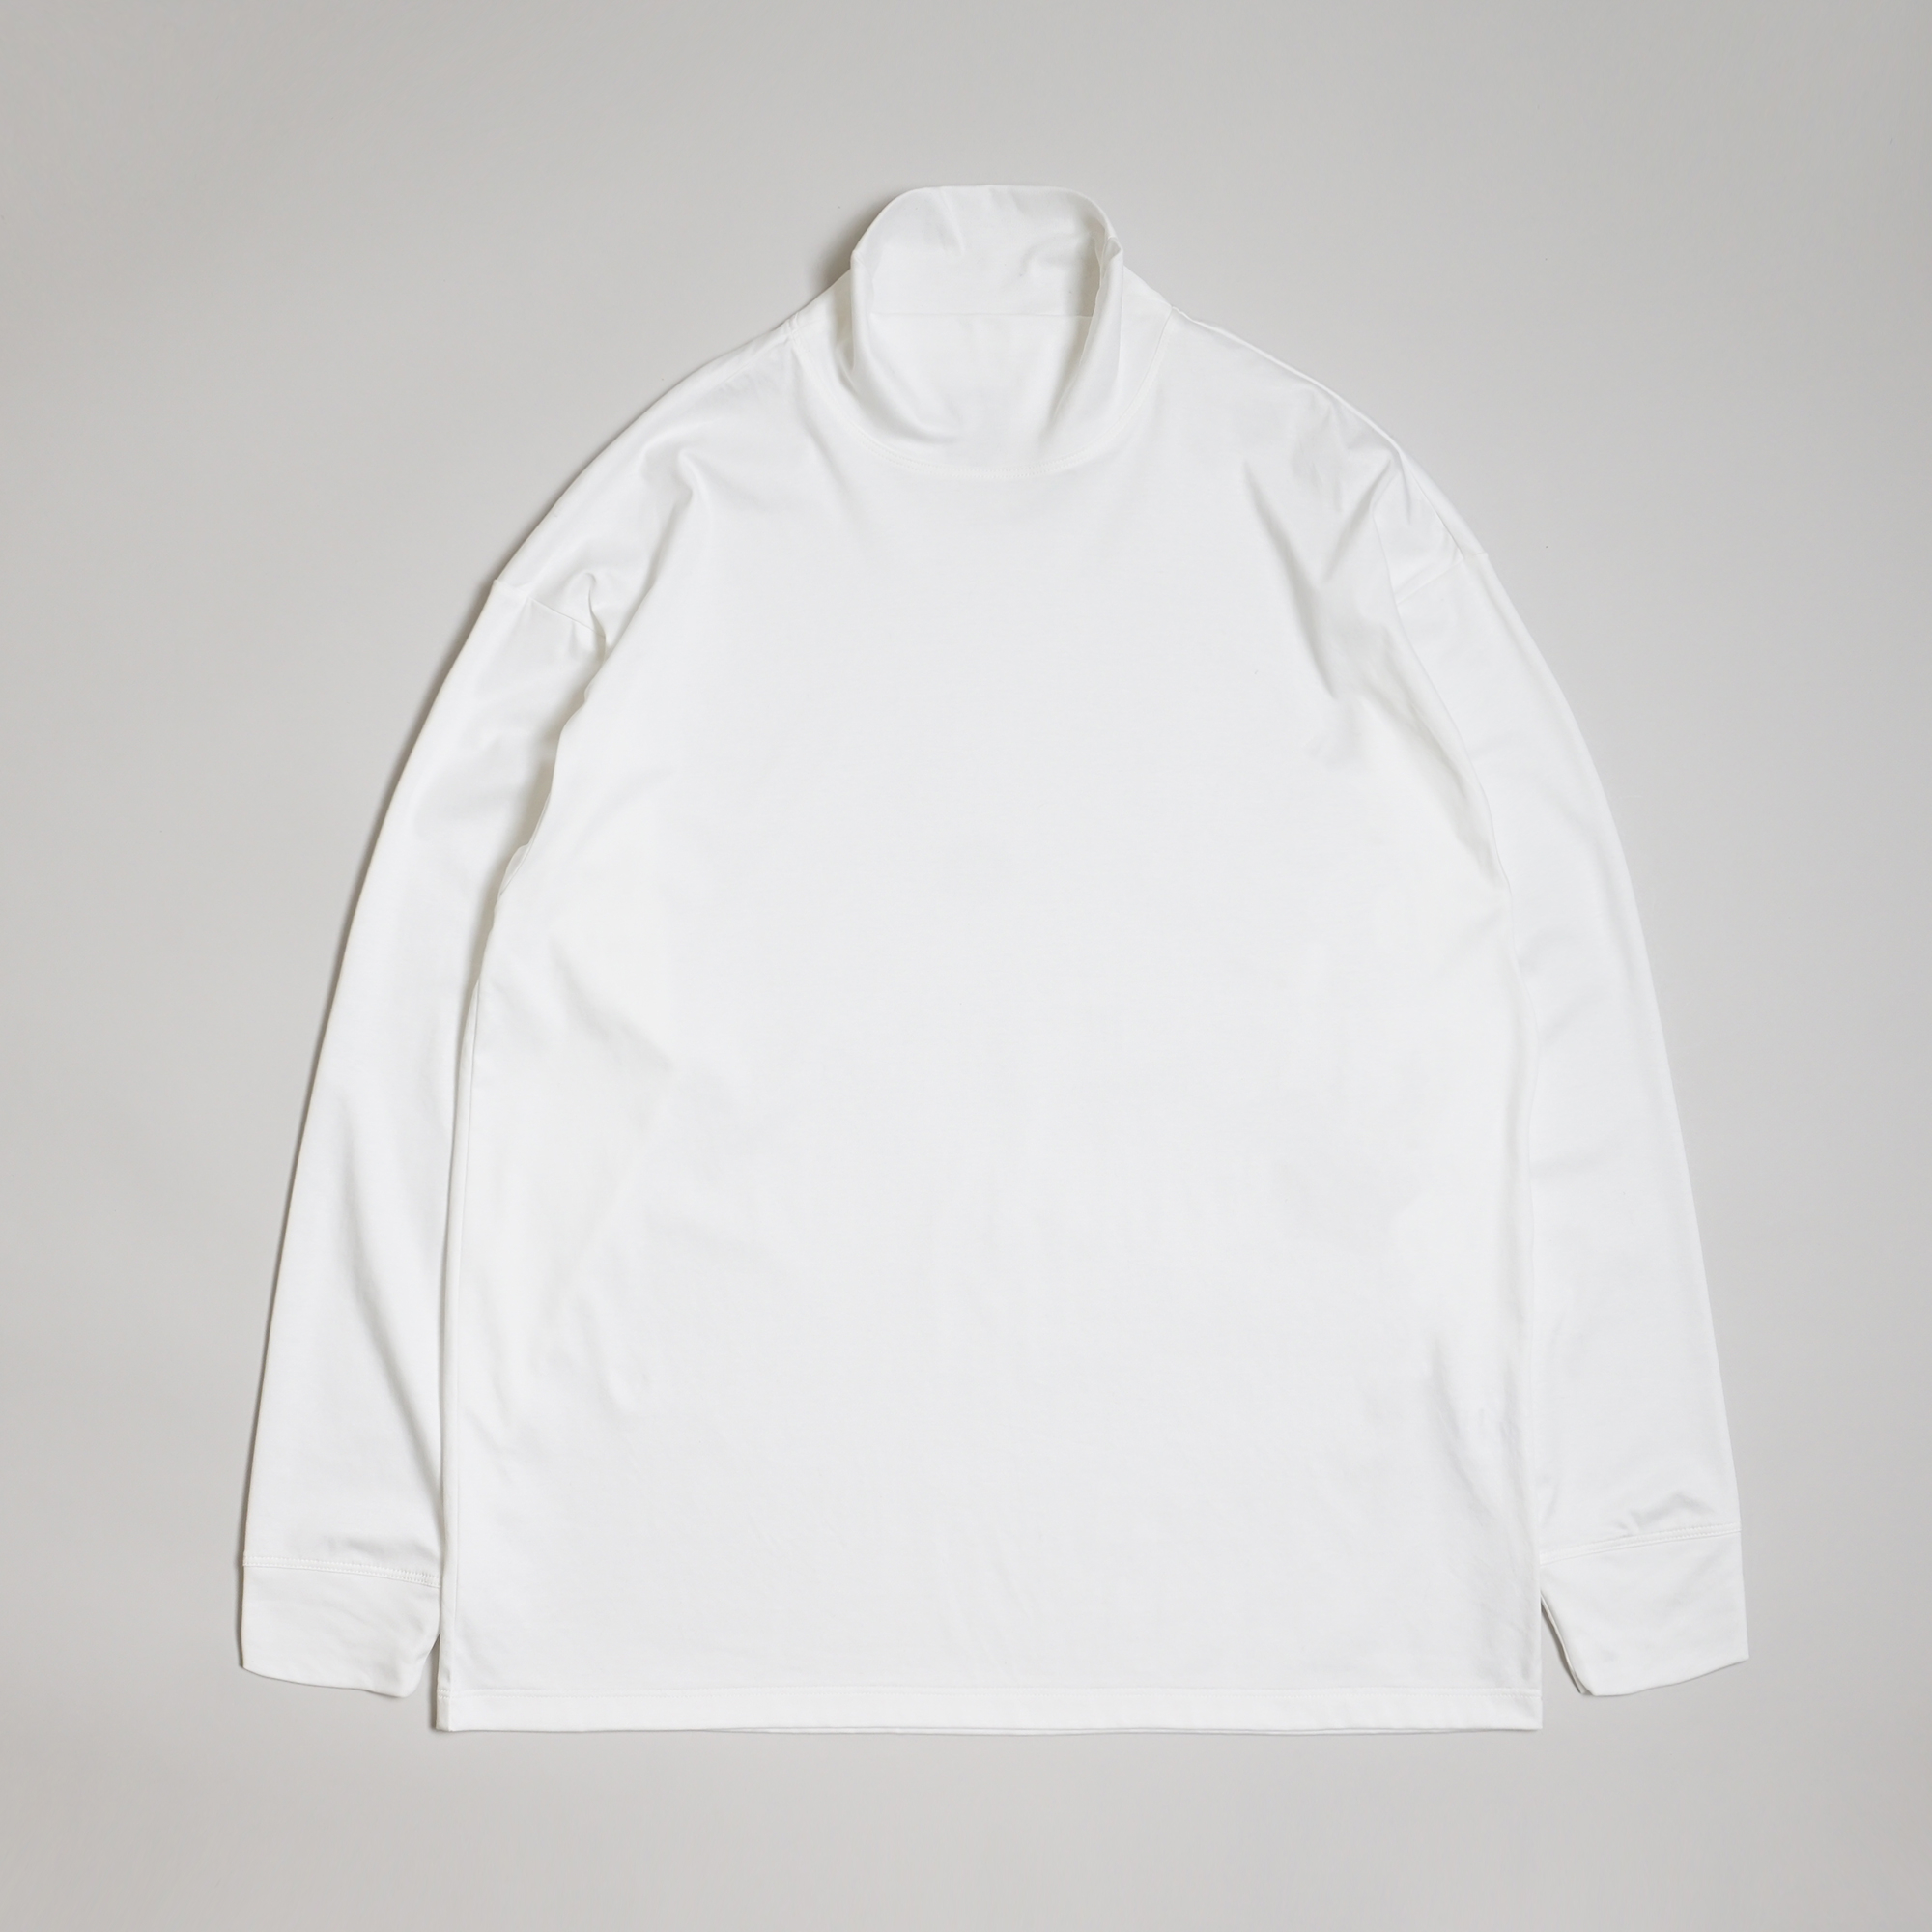 T-shirt de nuit coloris Blanc par Arpenteur pour C'H'C'M'